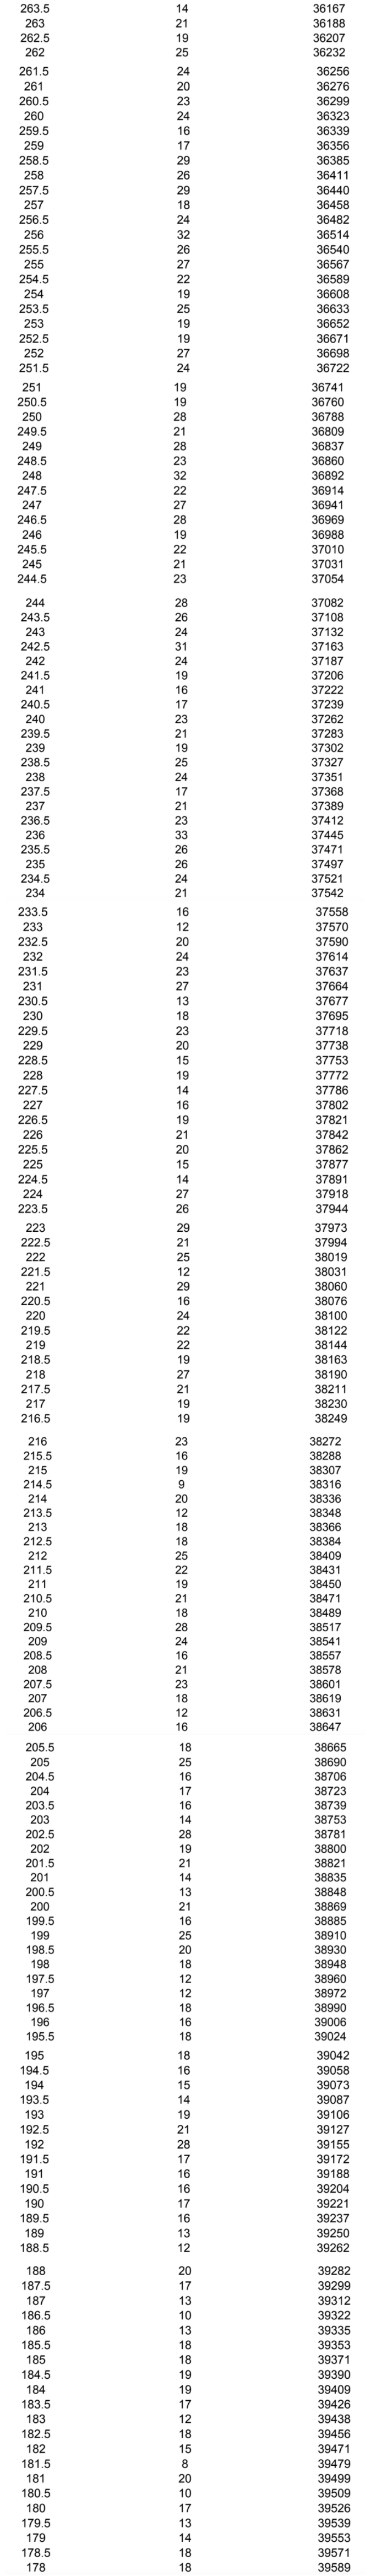 哈尔滨中考成绩位次表2021最新公布 哈尔滨中考成绩位次表什么时候出来(图7)